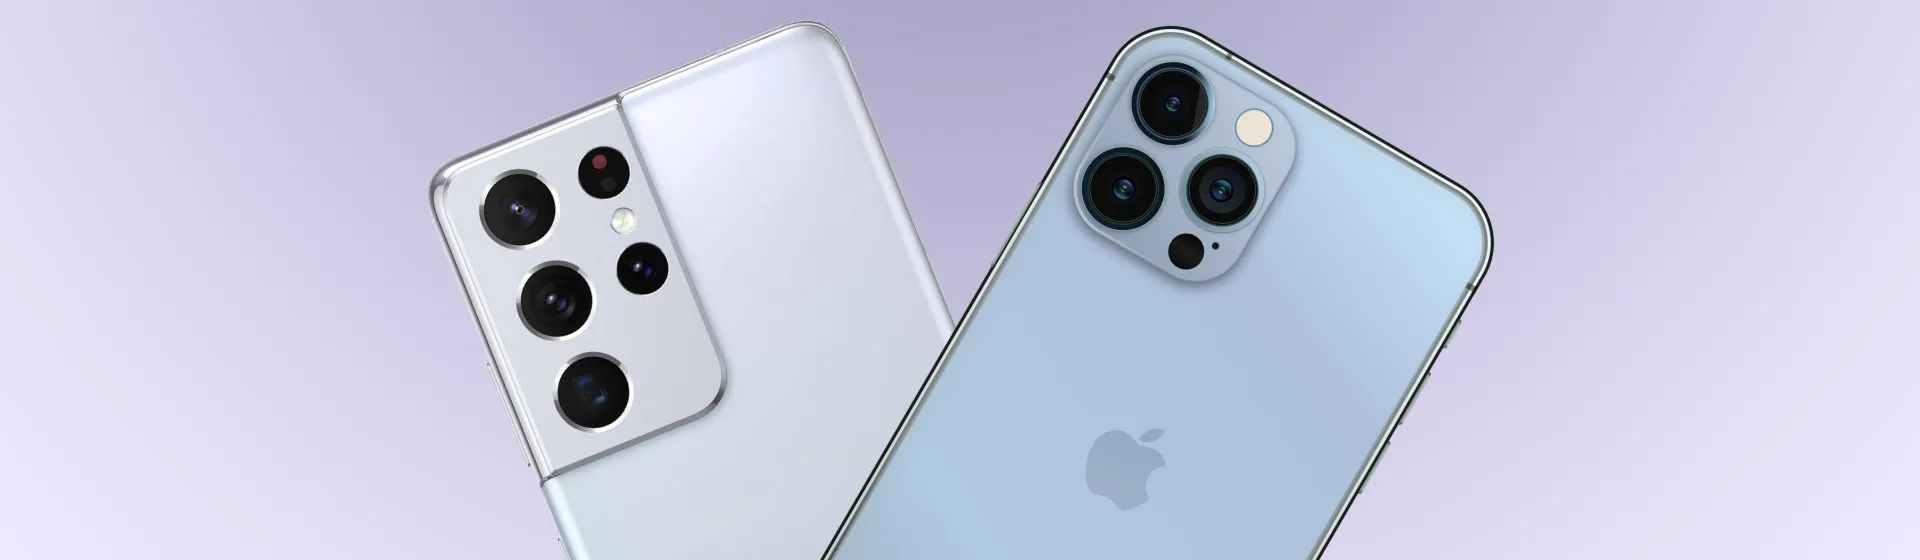 Galaxy S21 Ultra ou iPhone 13 Pro Max: quem leva a melhor?